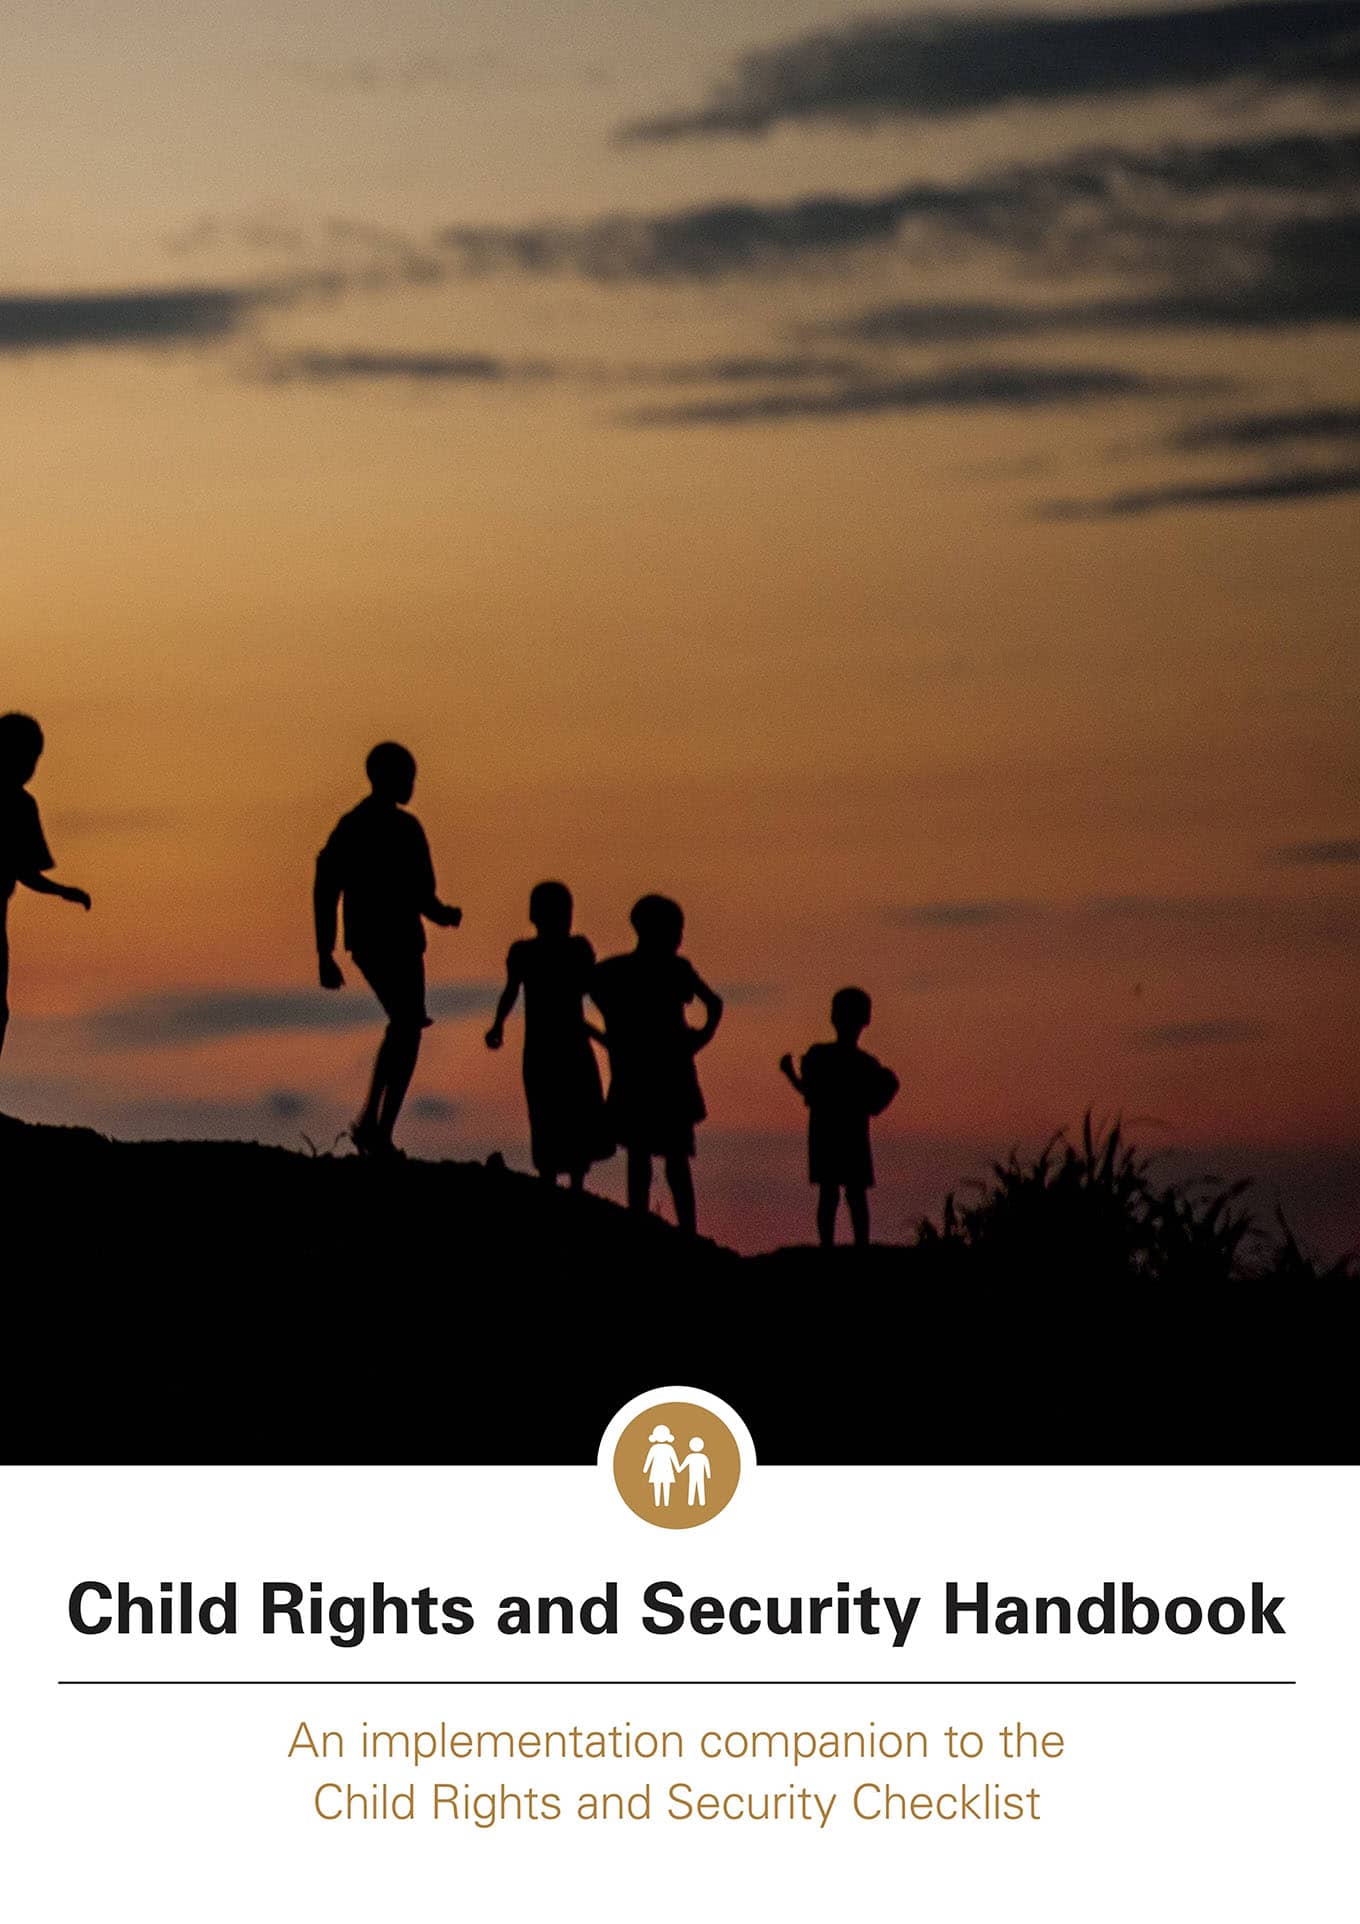 Manual de seguridad y derechos del niño: Complemento de implementación de la Lista de control de seguridad y derechos del niño (UNICEF, 2018)